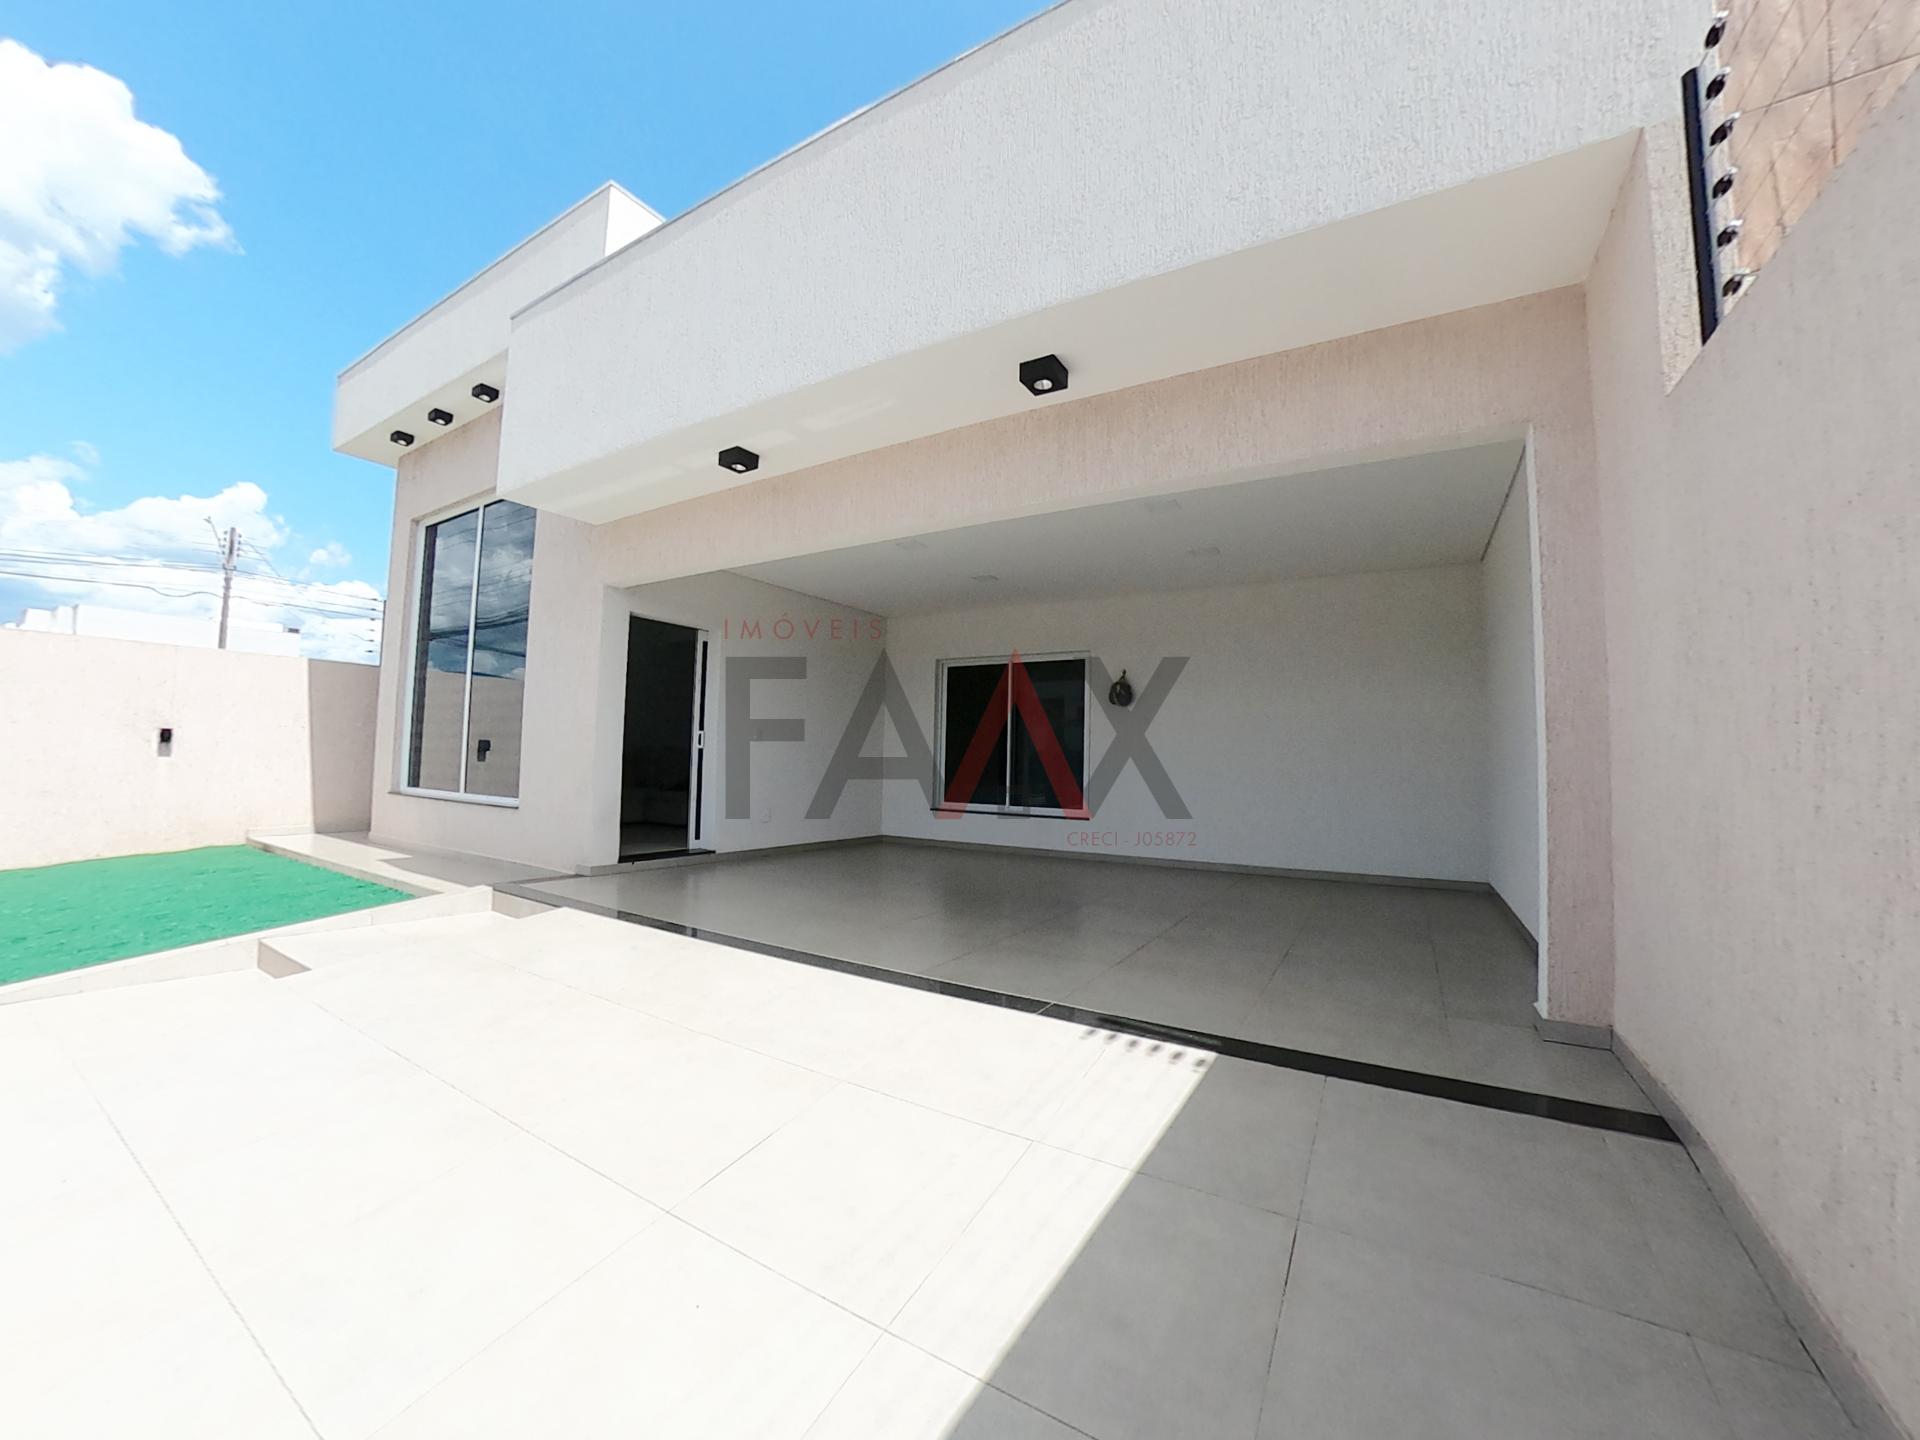 FAAX - Imobiliária Compra, Venda, Locação de Imóveis, Refinanciamento e Consórci